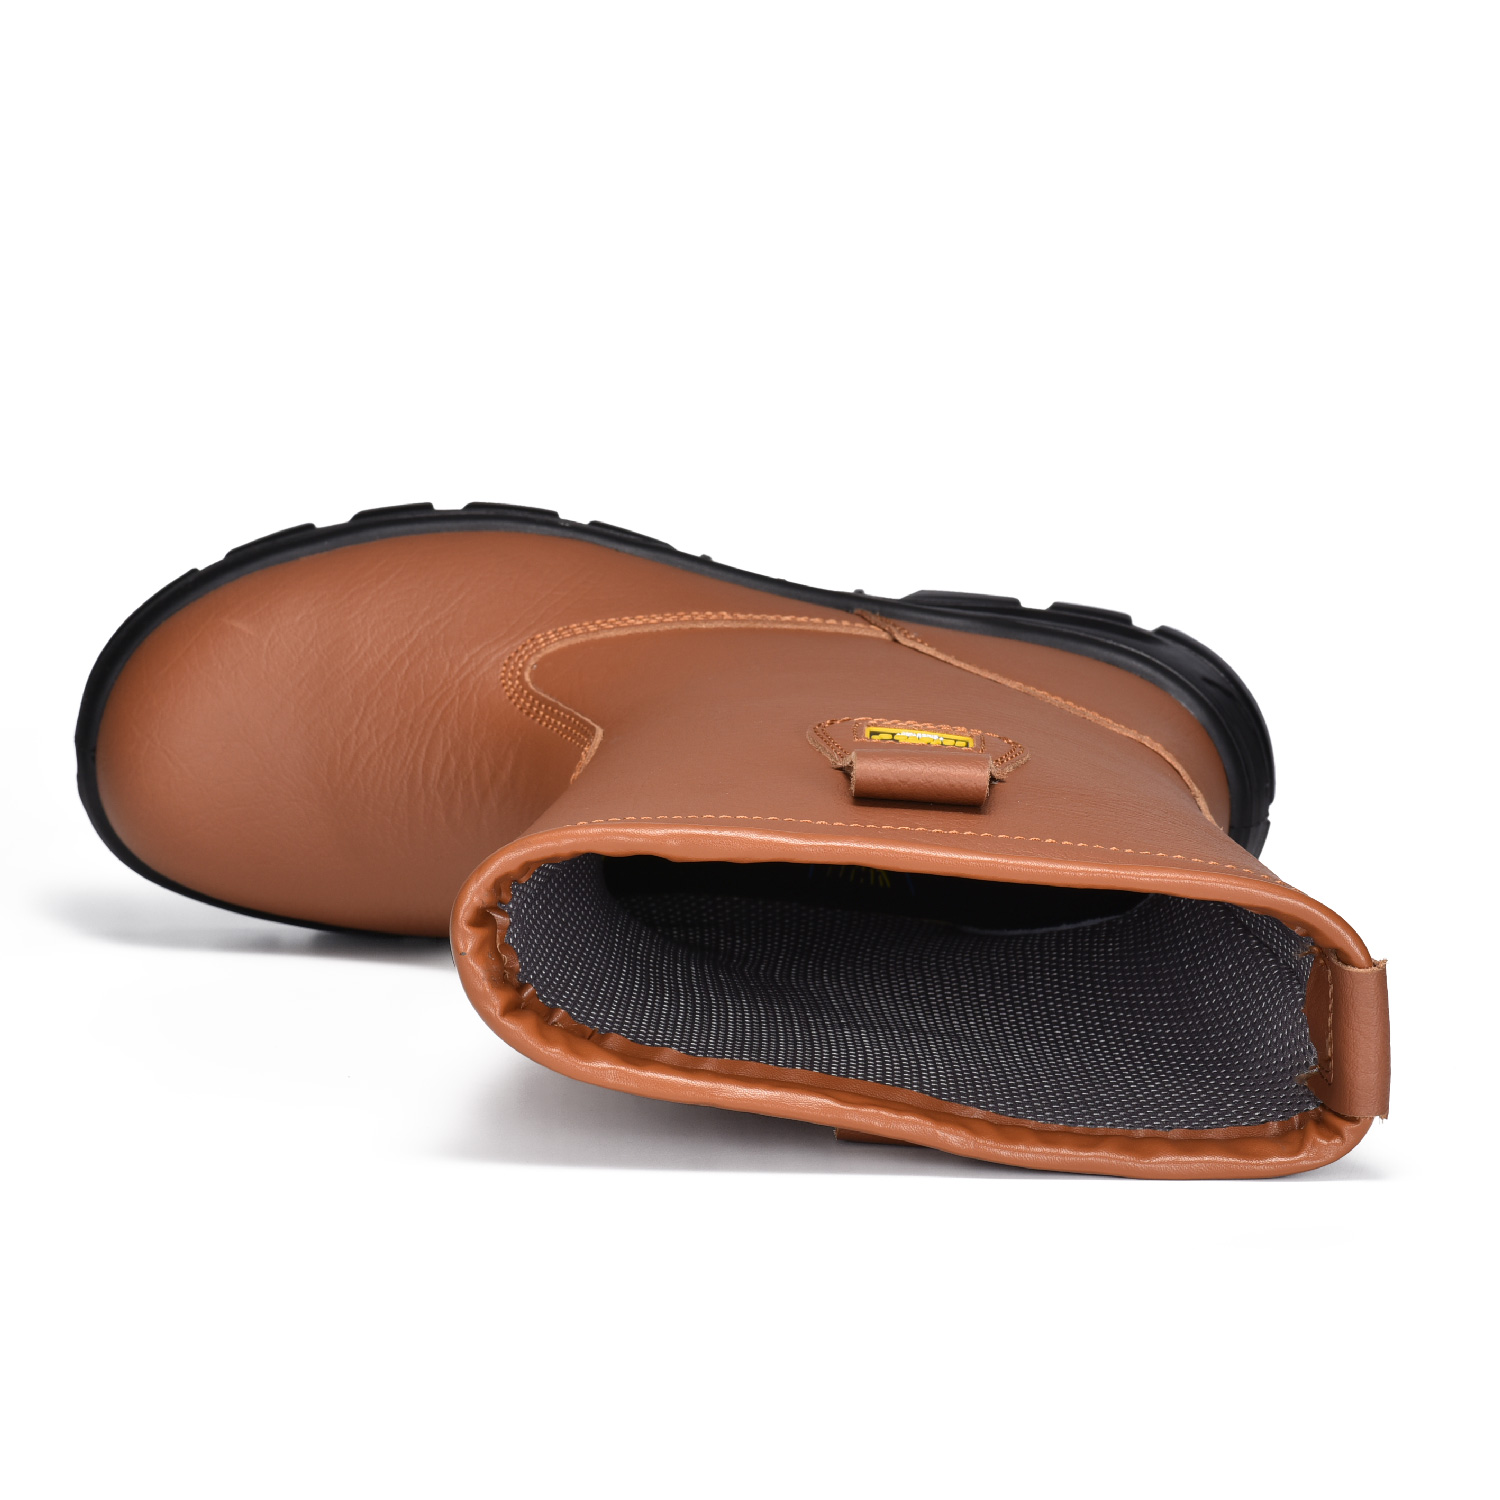 Botas de seguridad Buliders con punta de acero Zapatos de seguridad marrones aprobados por la CE-H-9430 Marrón